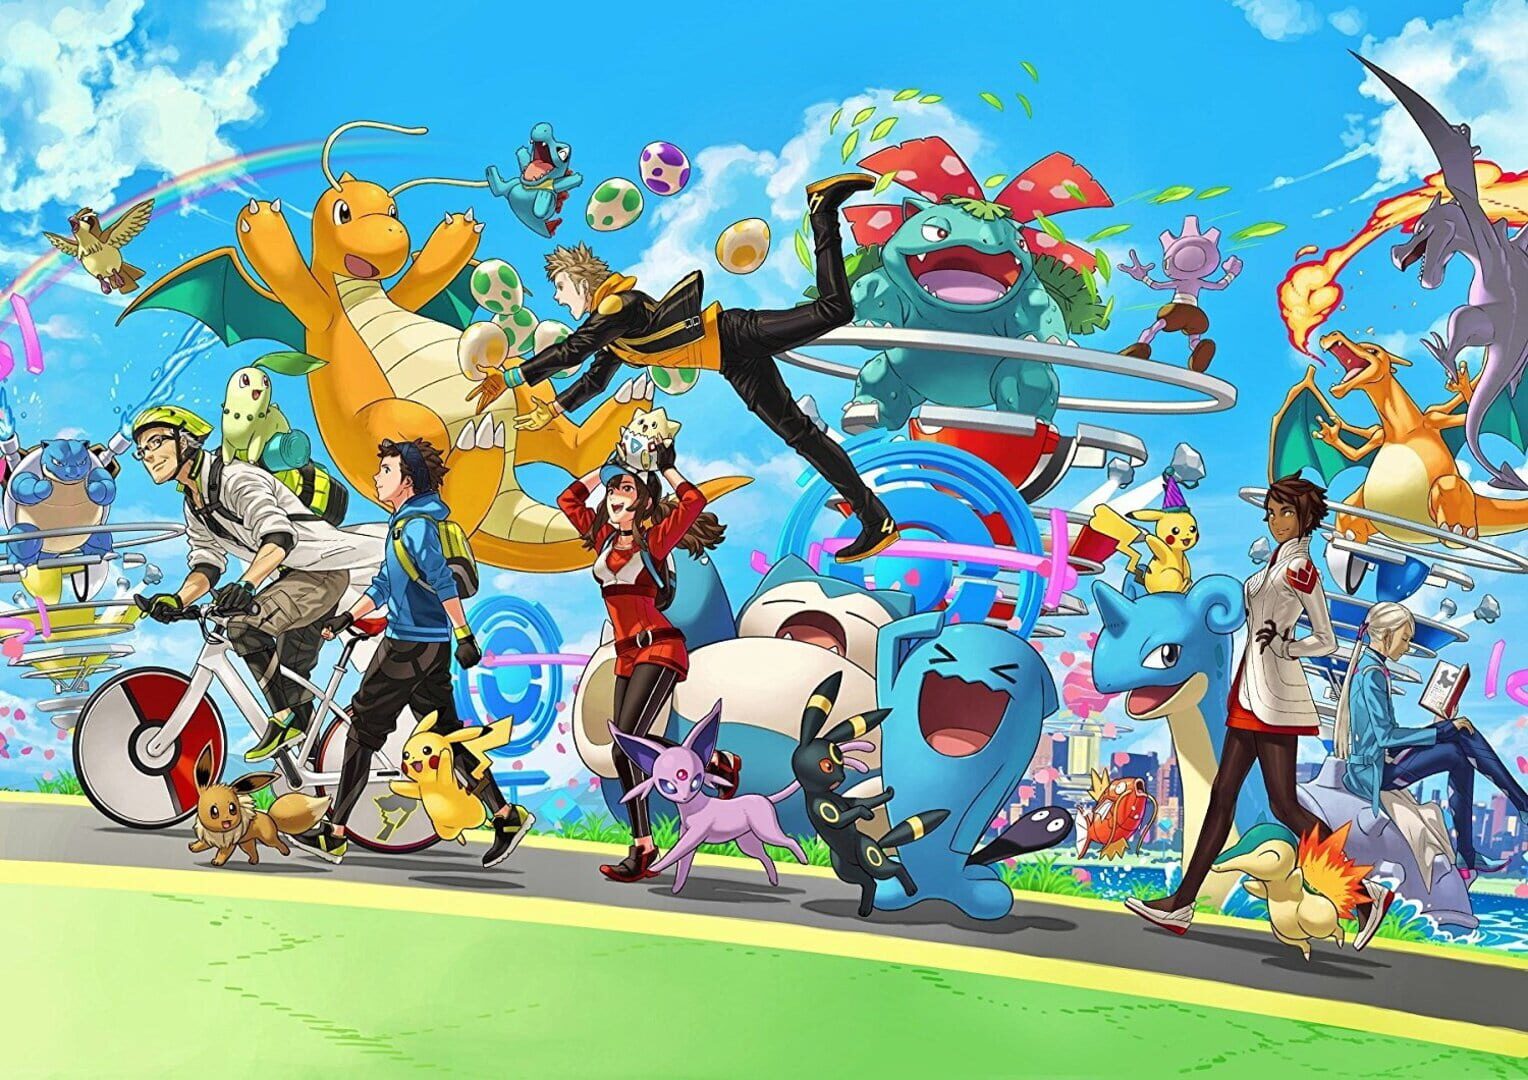 Artwork for Pokémon Go